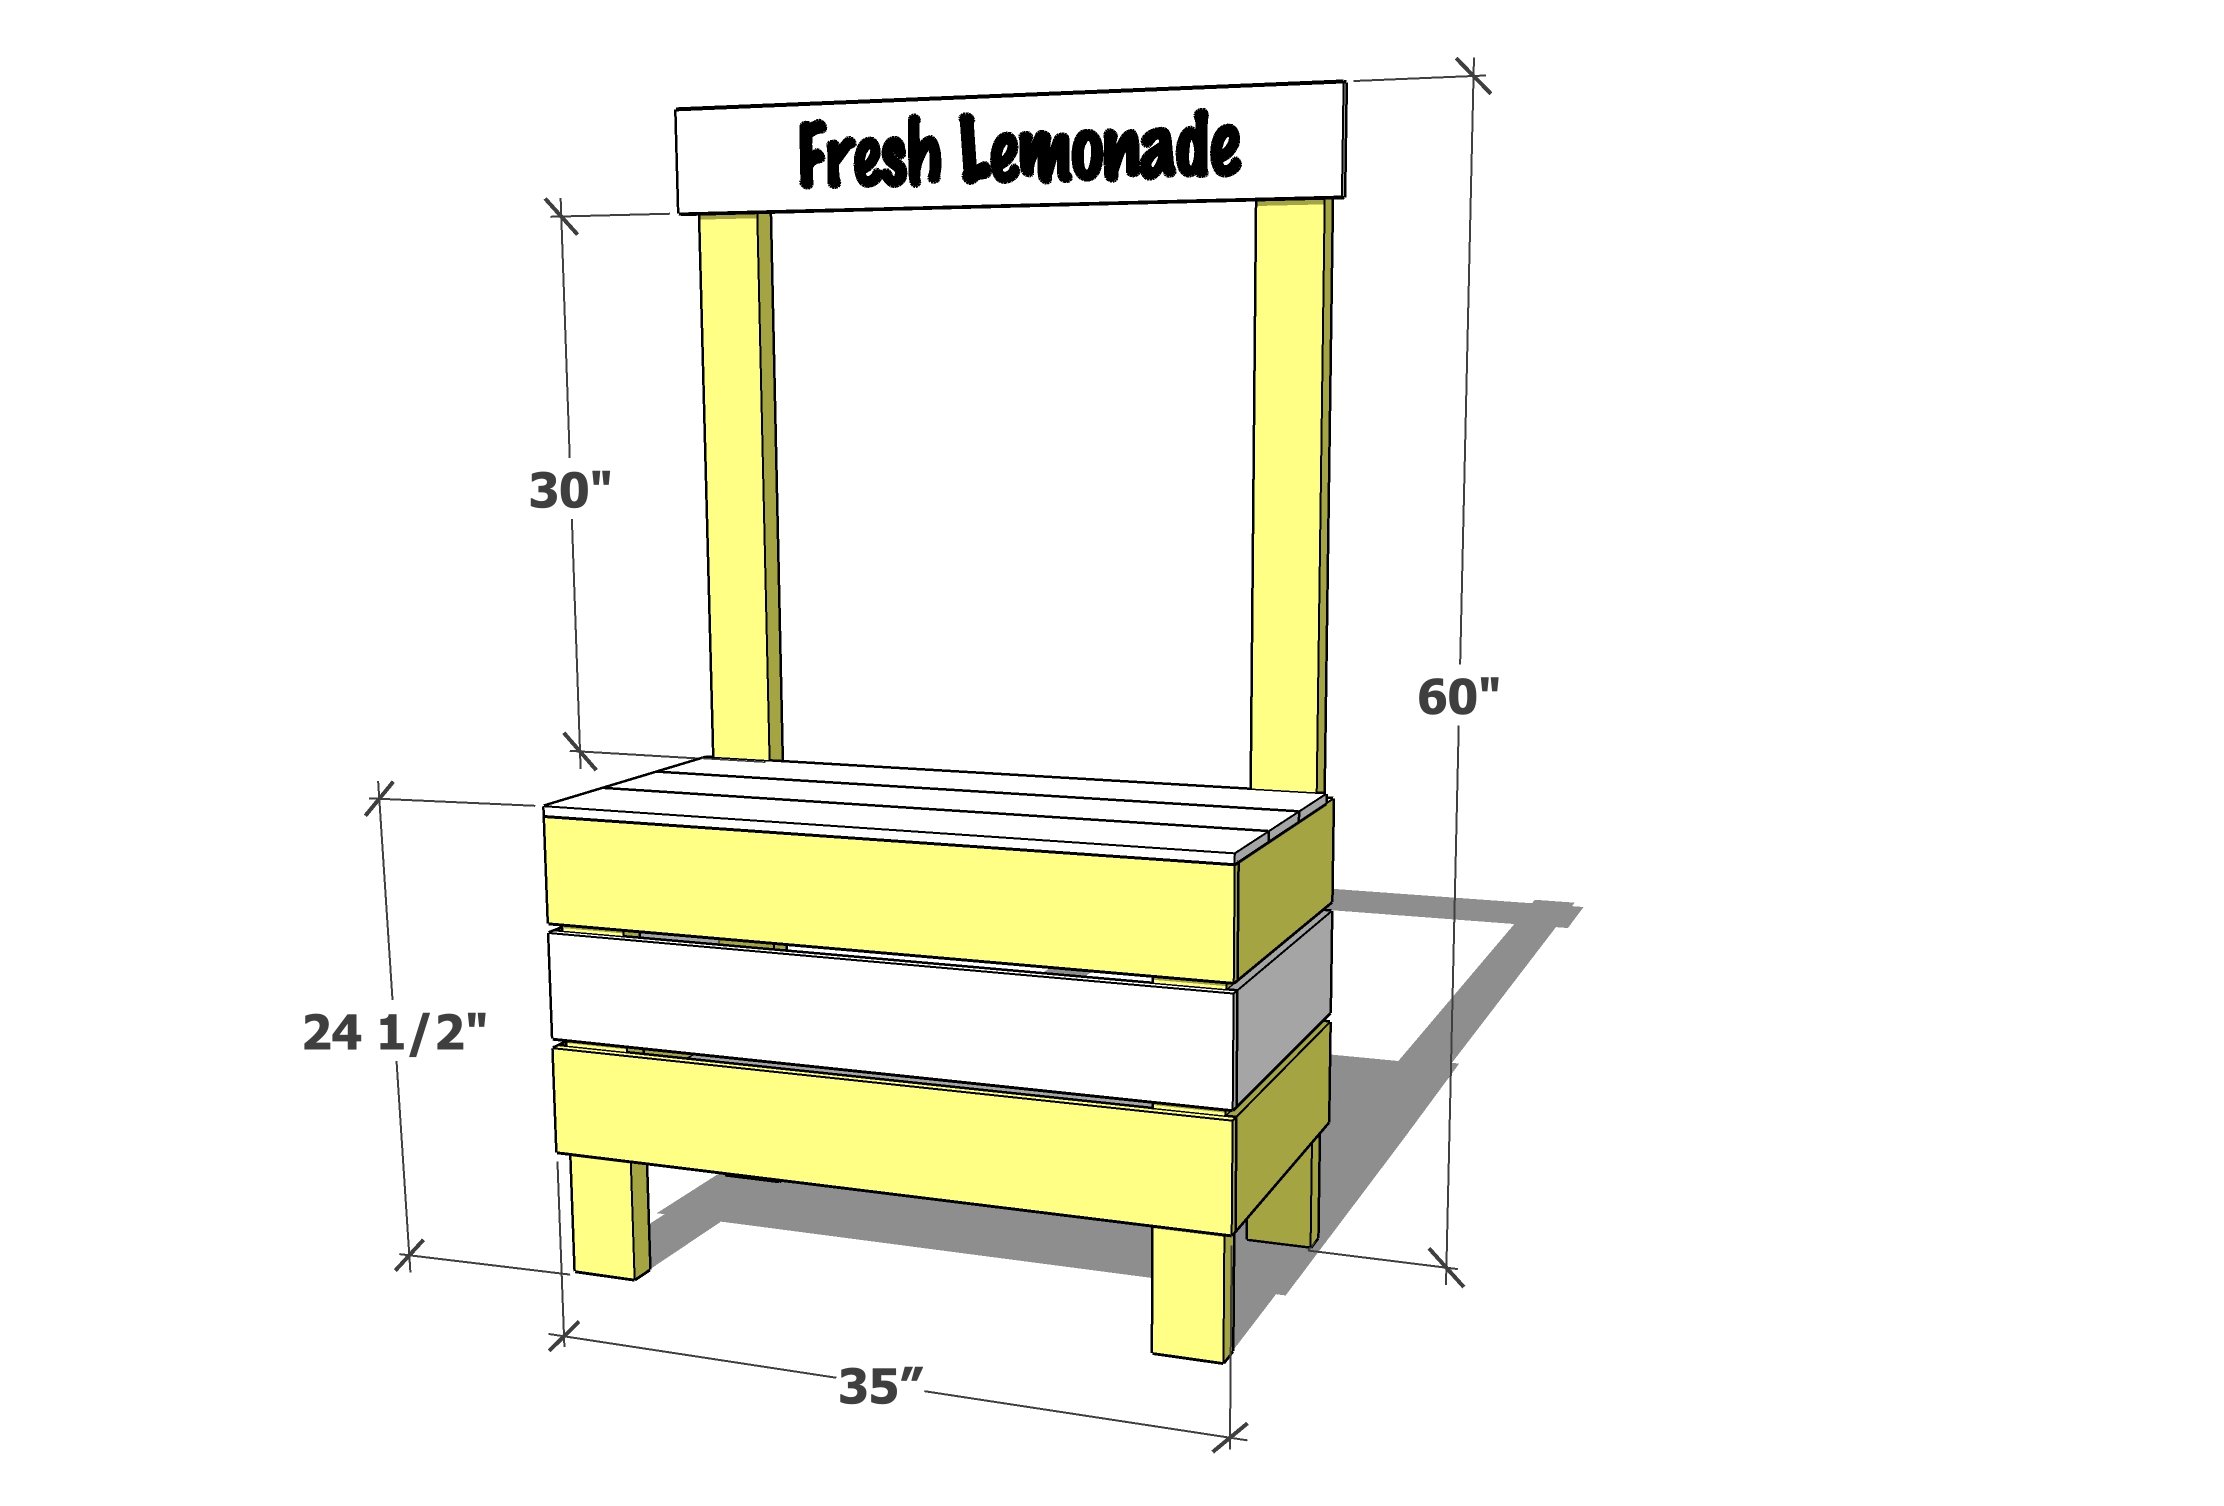 lemonade stand dimensions